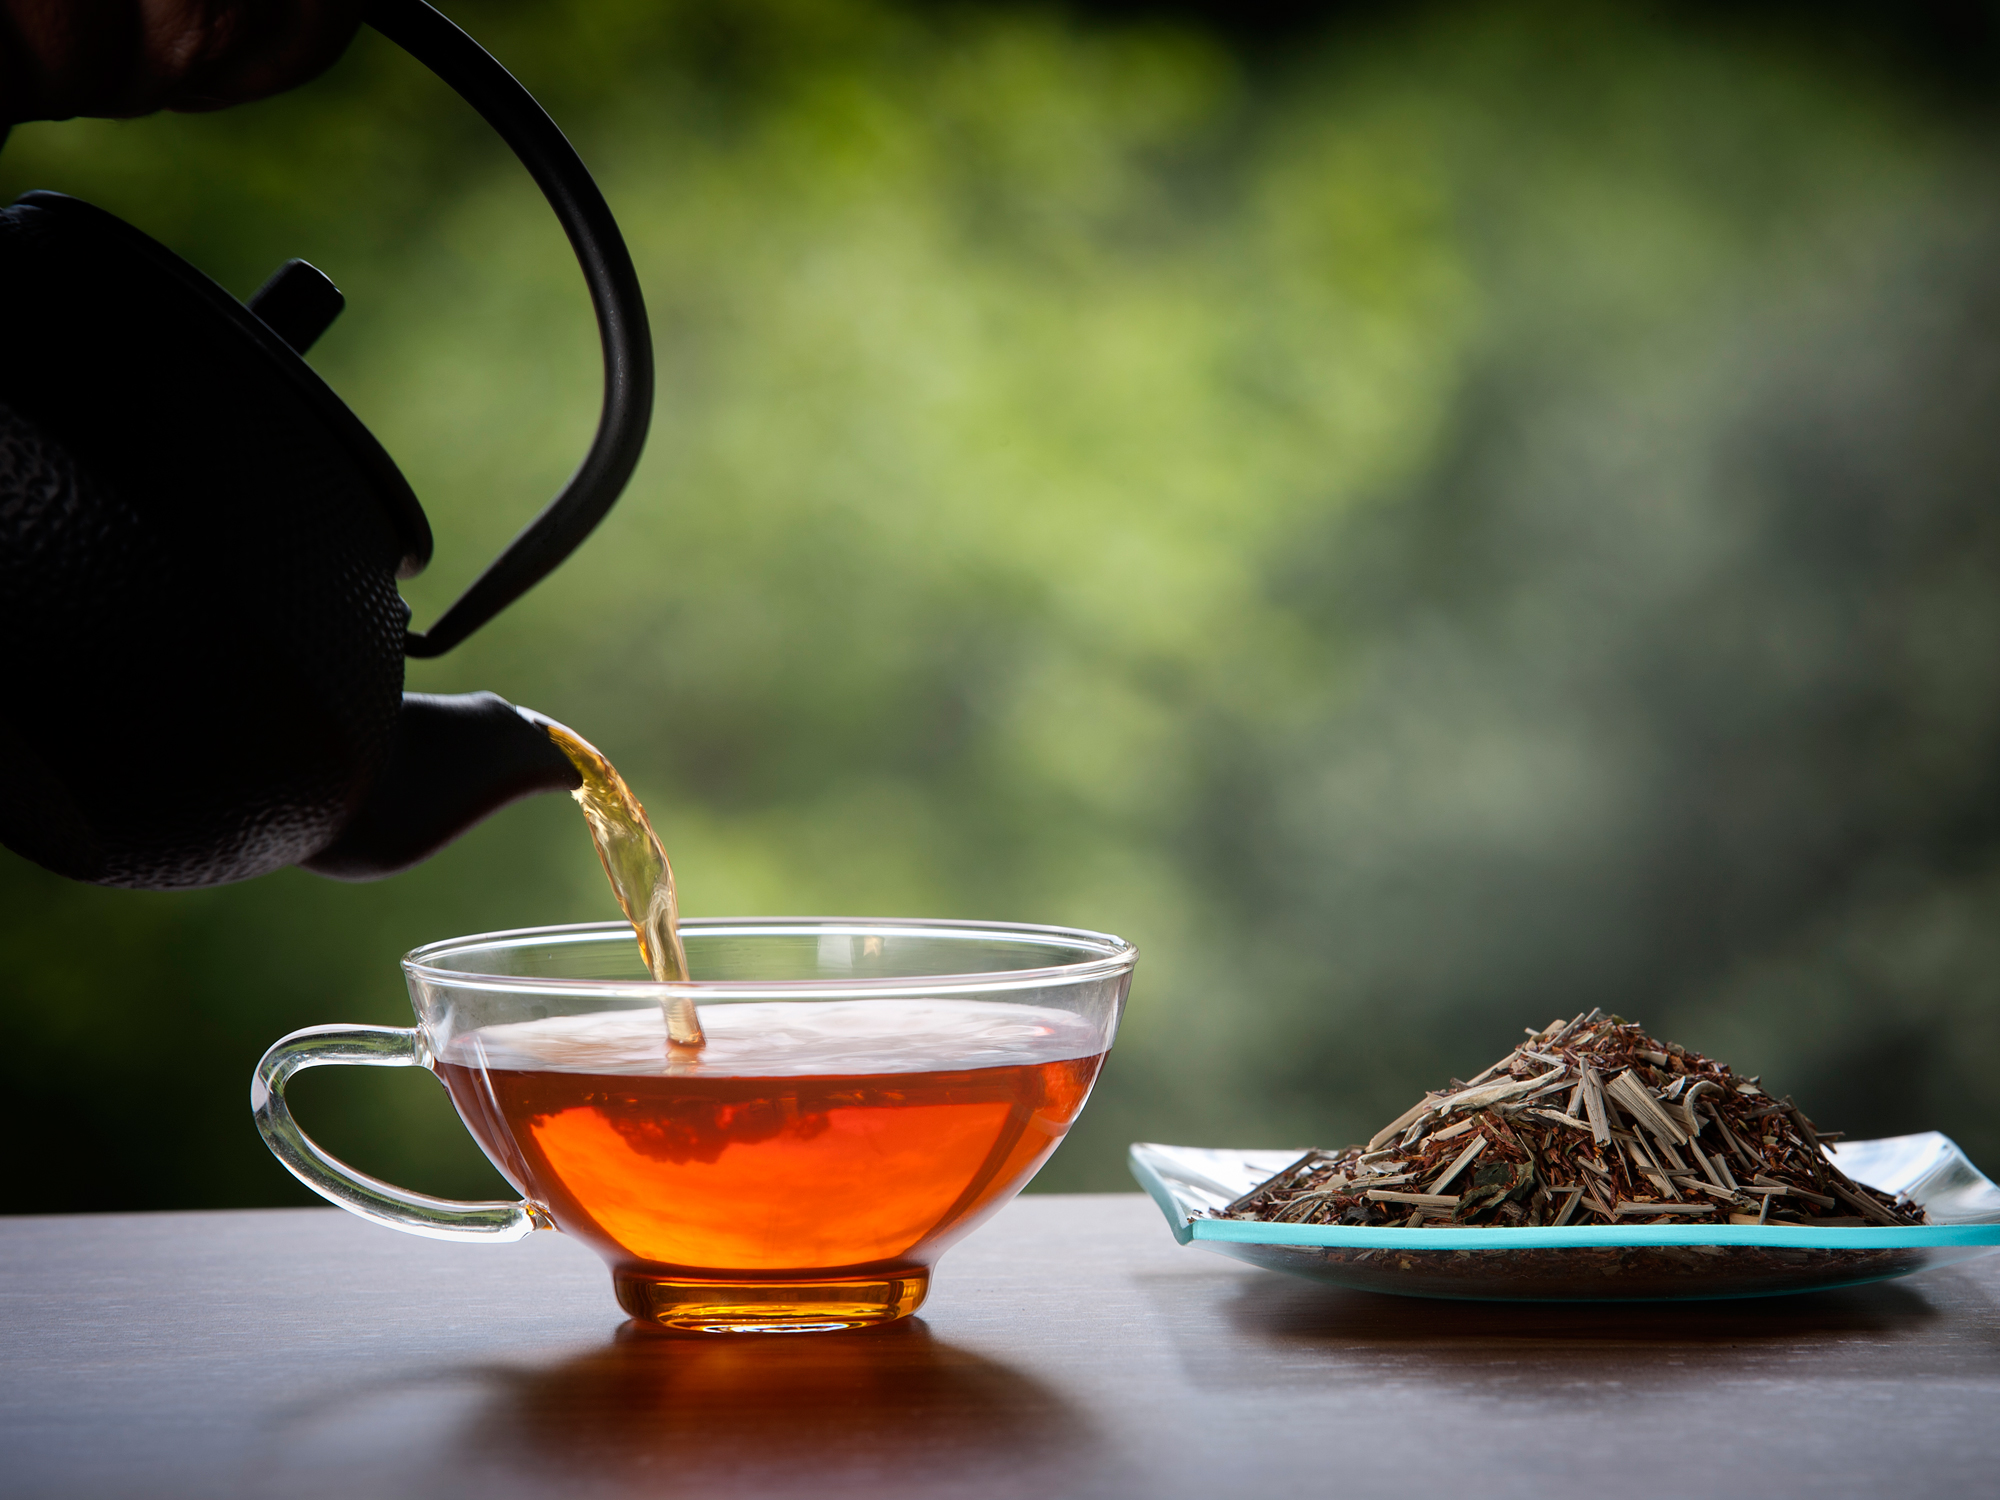 Lire la suite à propos de l’article Le Kenya introduit ses marques de thé au Ghana par le biais du marché de la ZLECAf